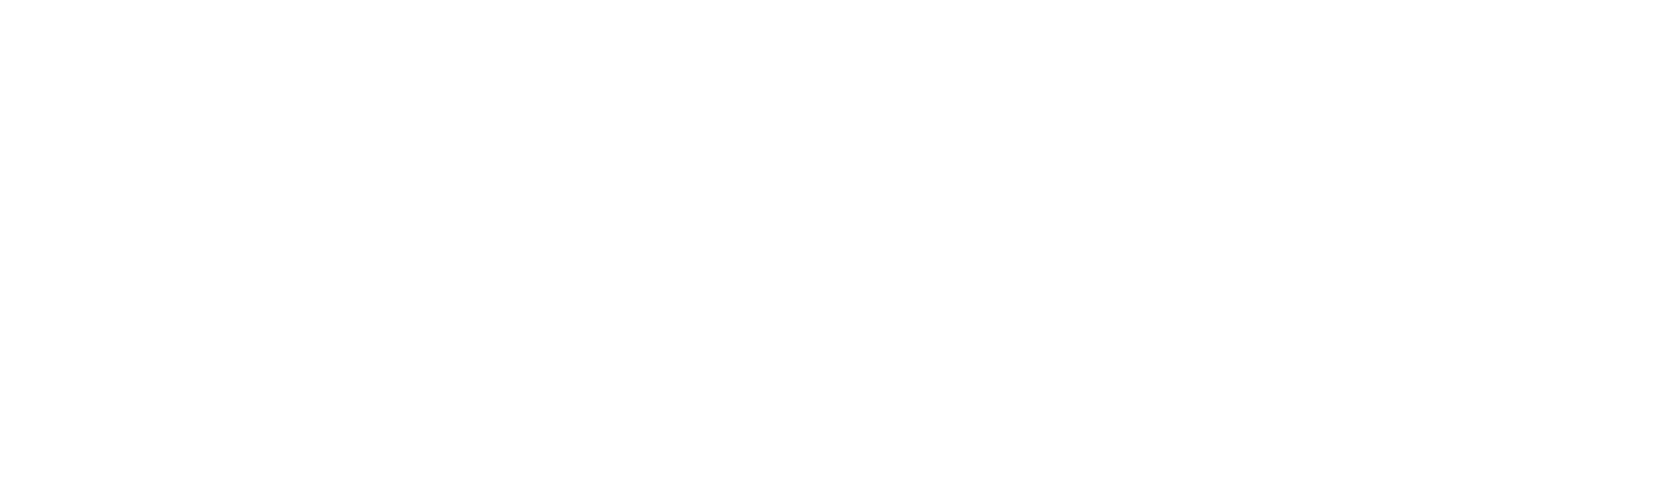 Торцевая заглушка Flexy TOREC SVET 50 для профилей Flexy: размер, вид, применение, способ монтажа в Беларуси (РБ)